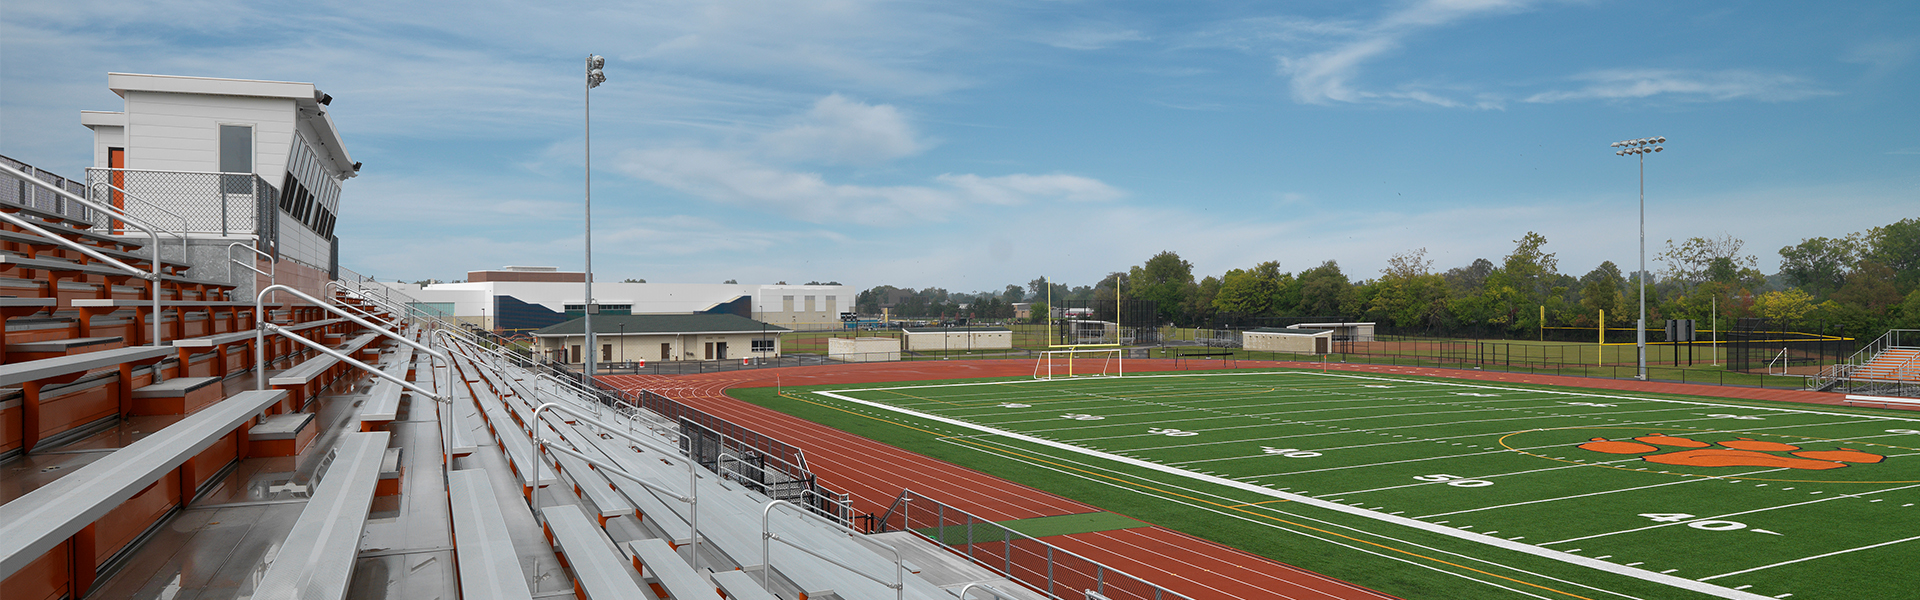 Van Buren Public Schools football field and stands.